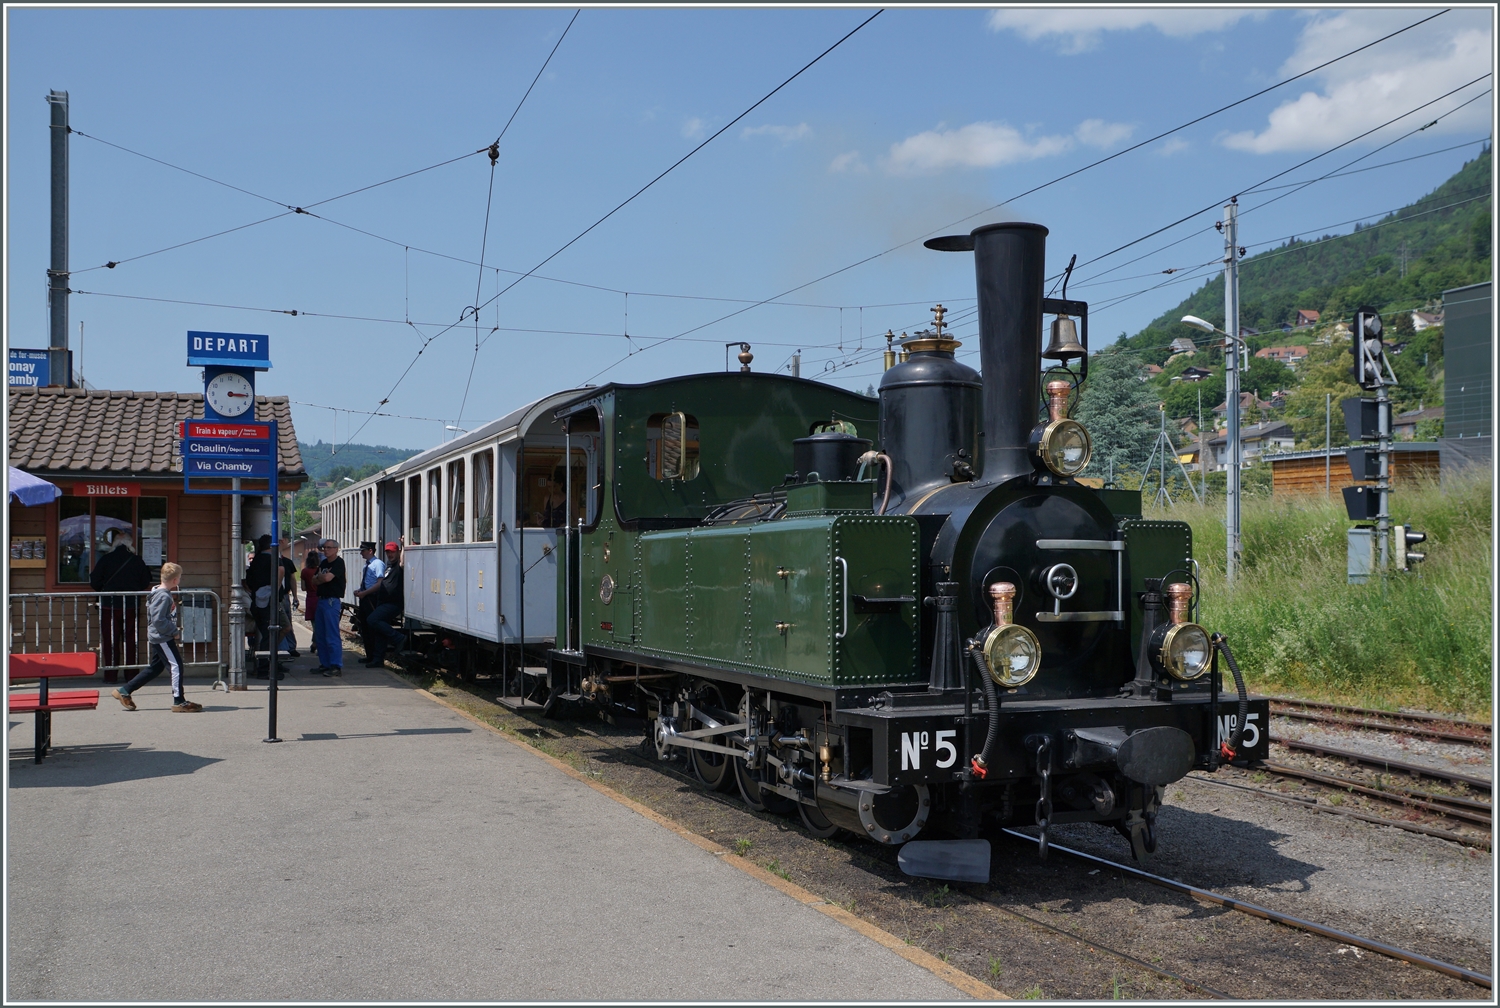 Festival Suisse de la vapeur (Schweizer Dampffestival) 2023 - Immer wieder faszinierend, dass eine 1890 gebaute Lok heute noch funktioniert. Die LEB G 3/3 N° 5 der Blonay - Chamby Bahn wartet in Blonay mit ihrem schmucken Zug auf die Fahrt nach Chaulin.

29. Mai 2023